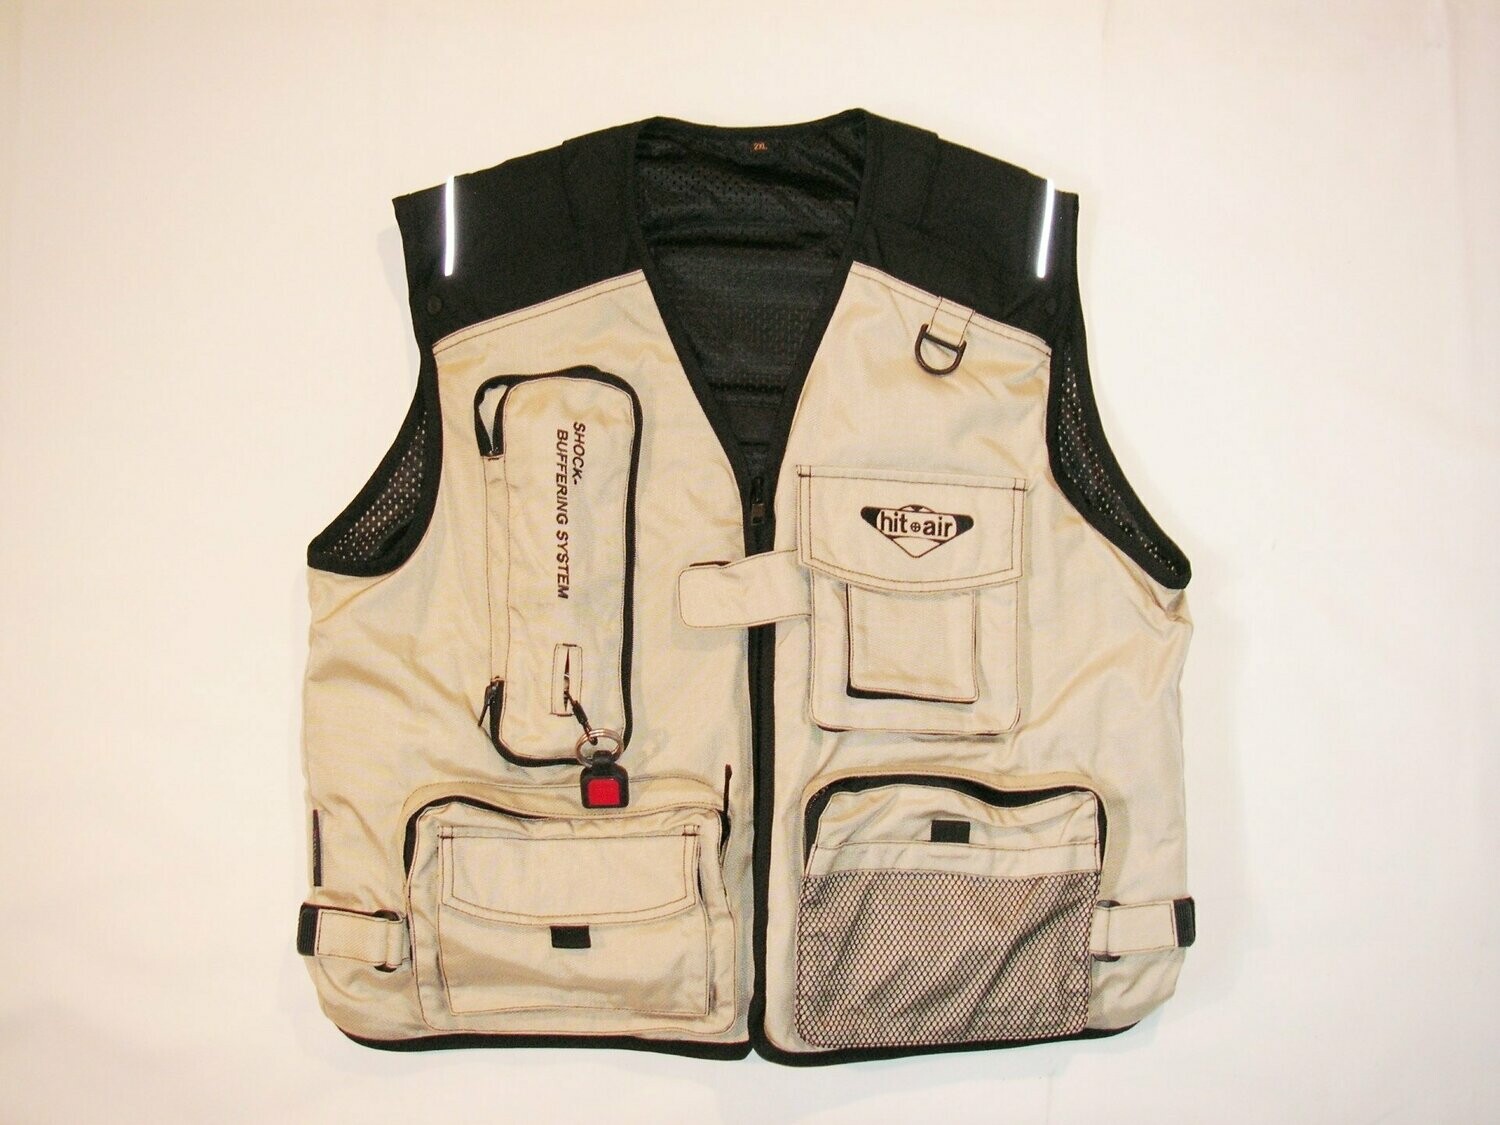 B - material V neck vest with large pockets